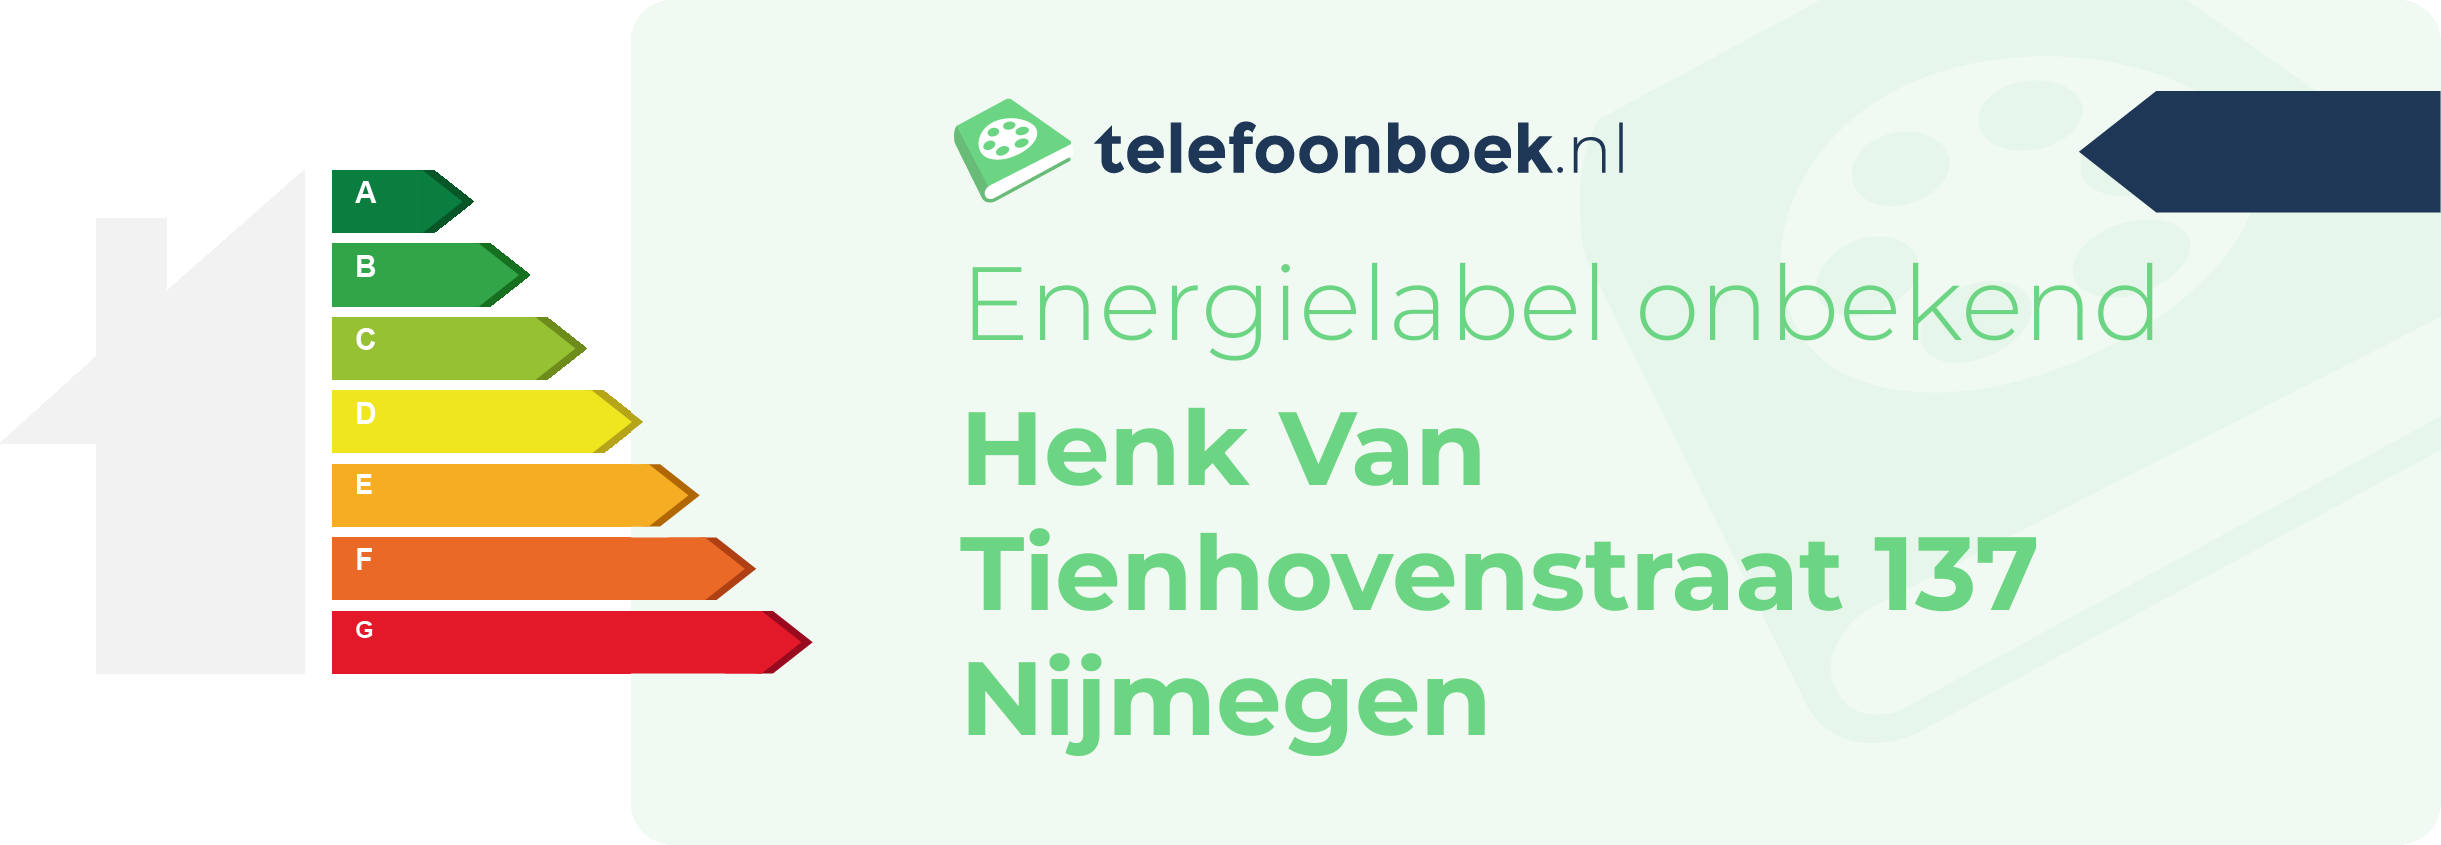 Energielabel Henk Van Tienhovenstraat 137 Nijmegen